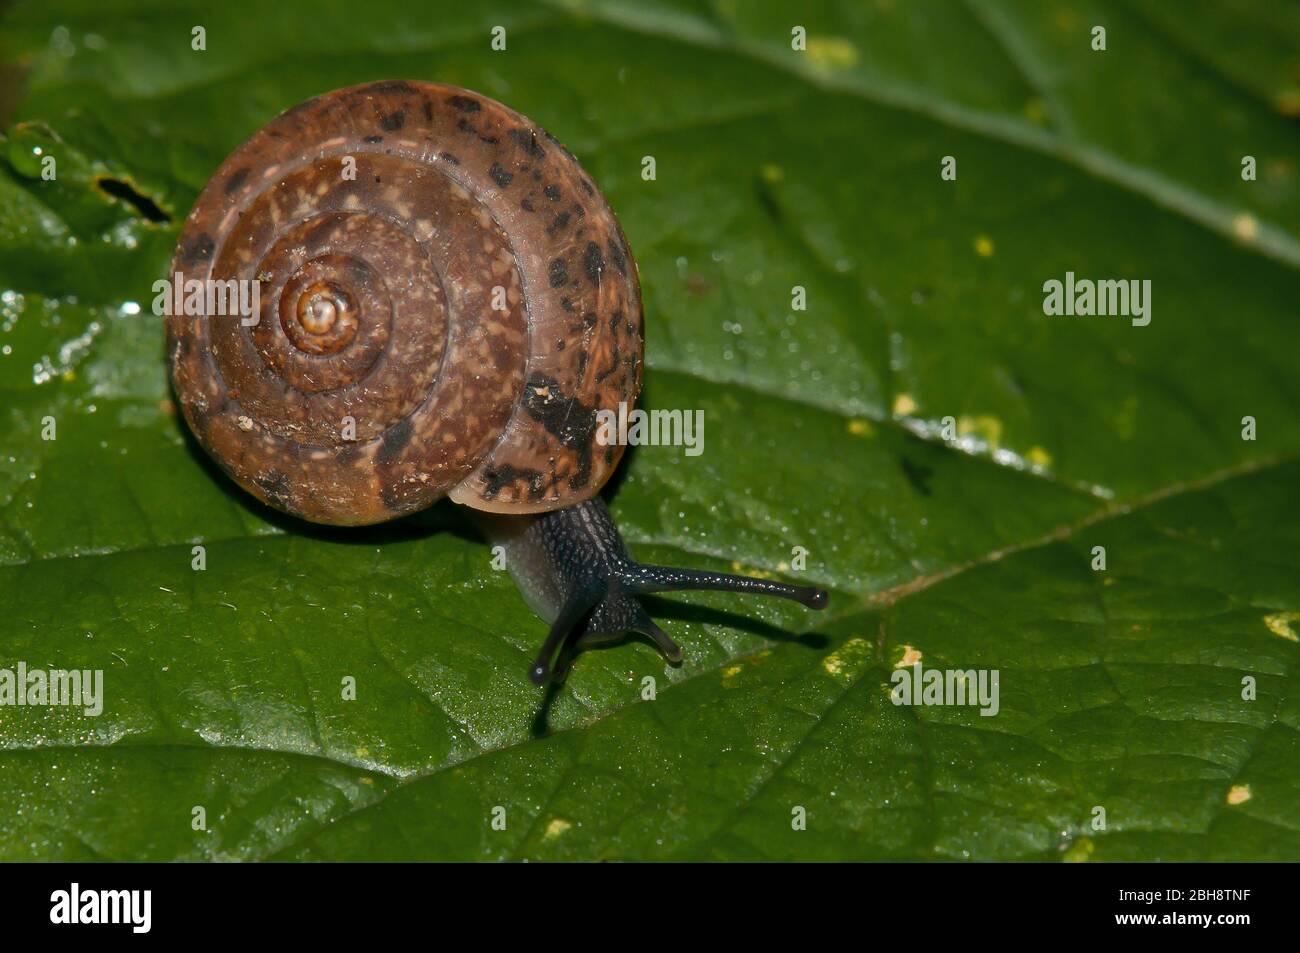 Red snail, Monachoides incarnatus, crawling on leaf, Bavaria, Germany Stock Photo